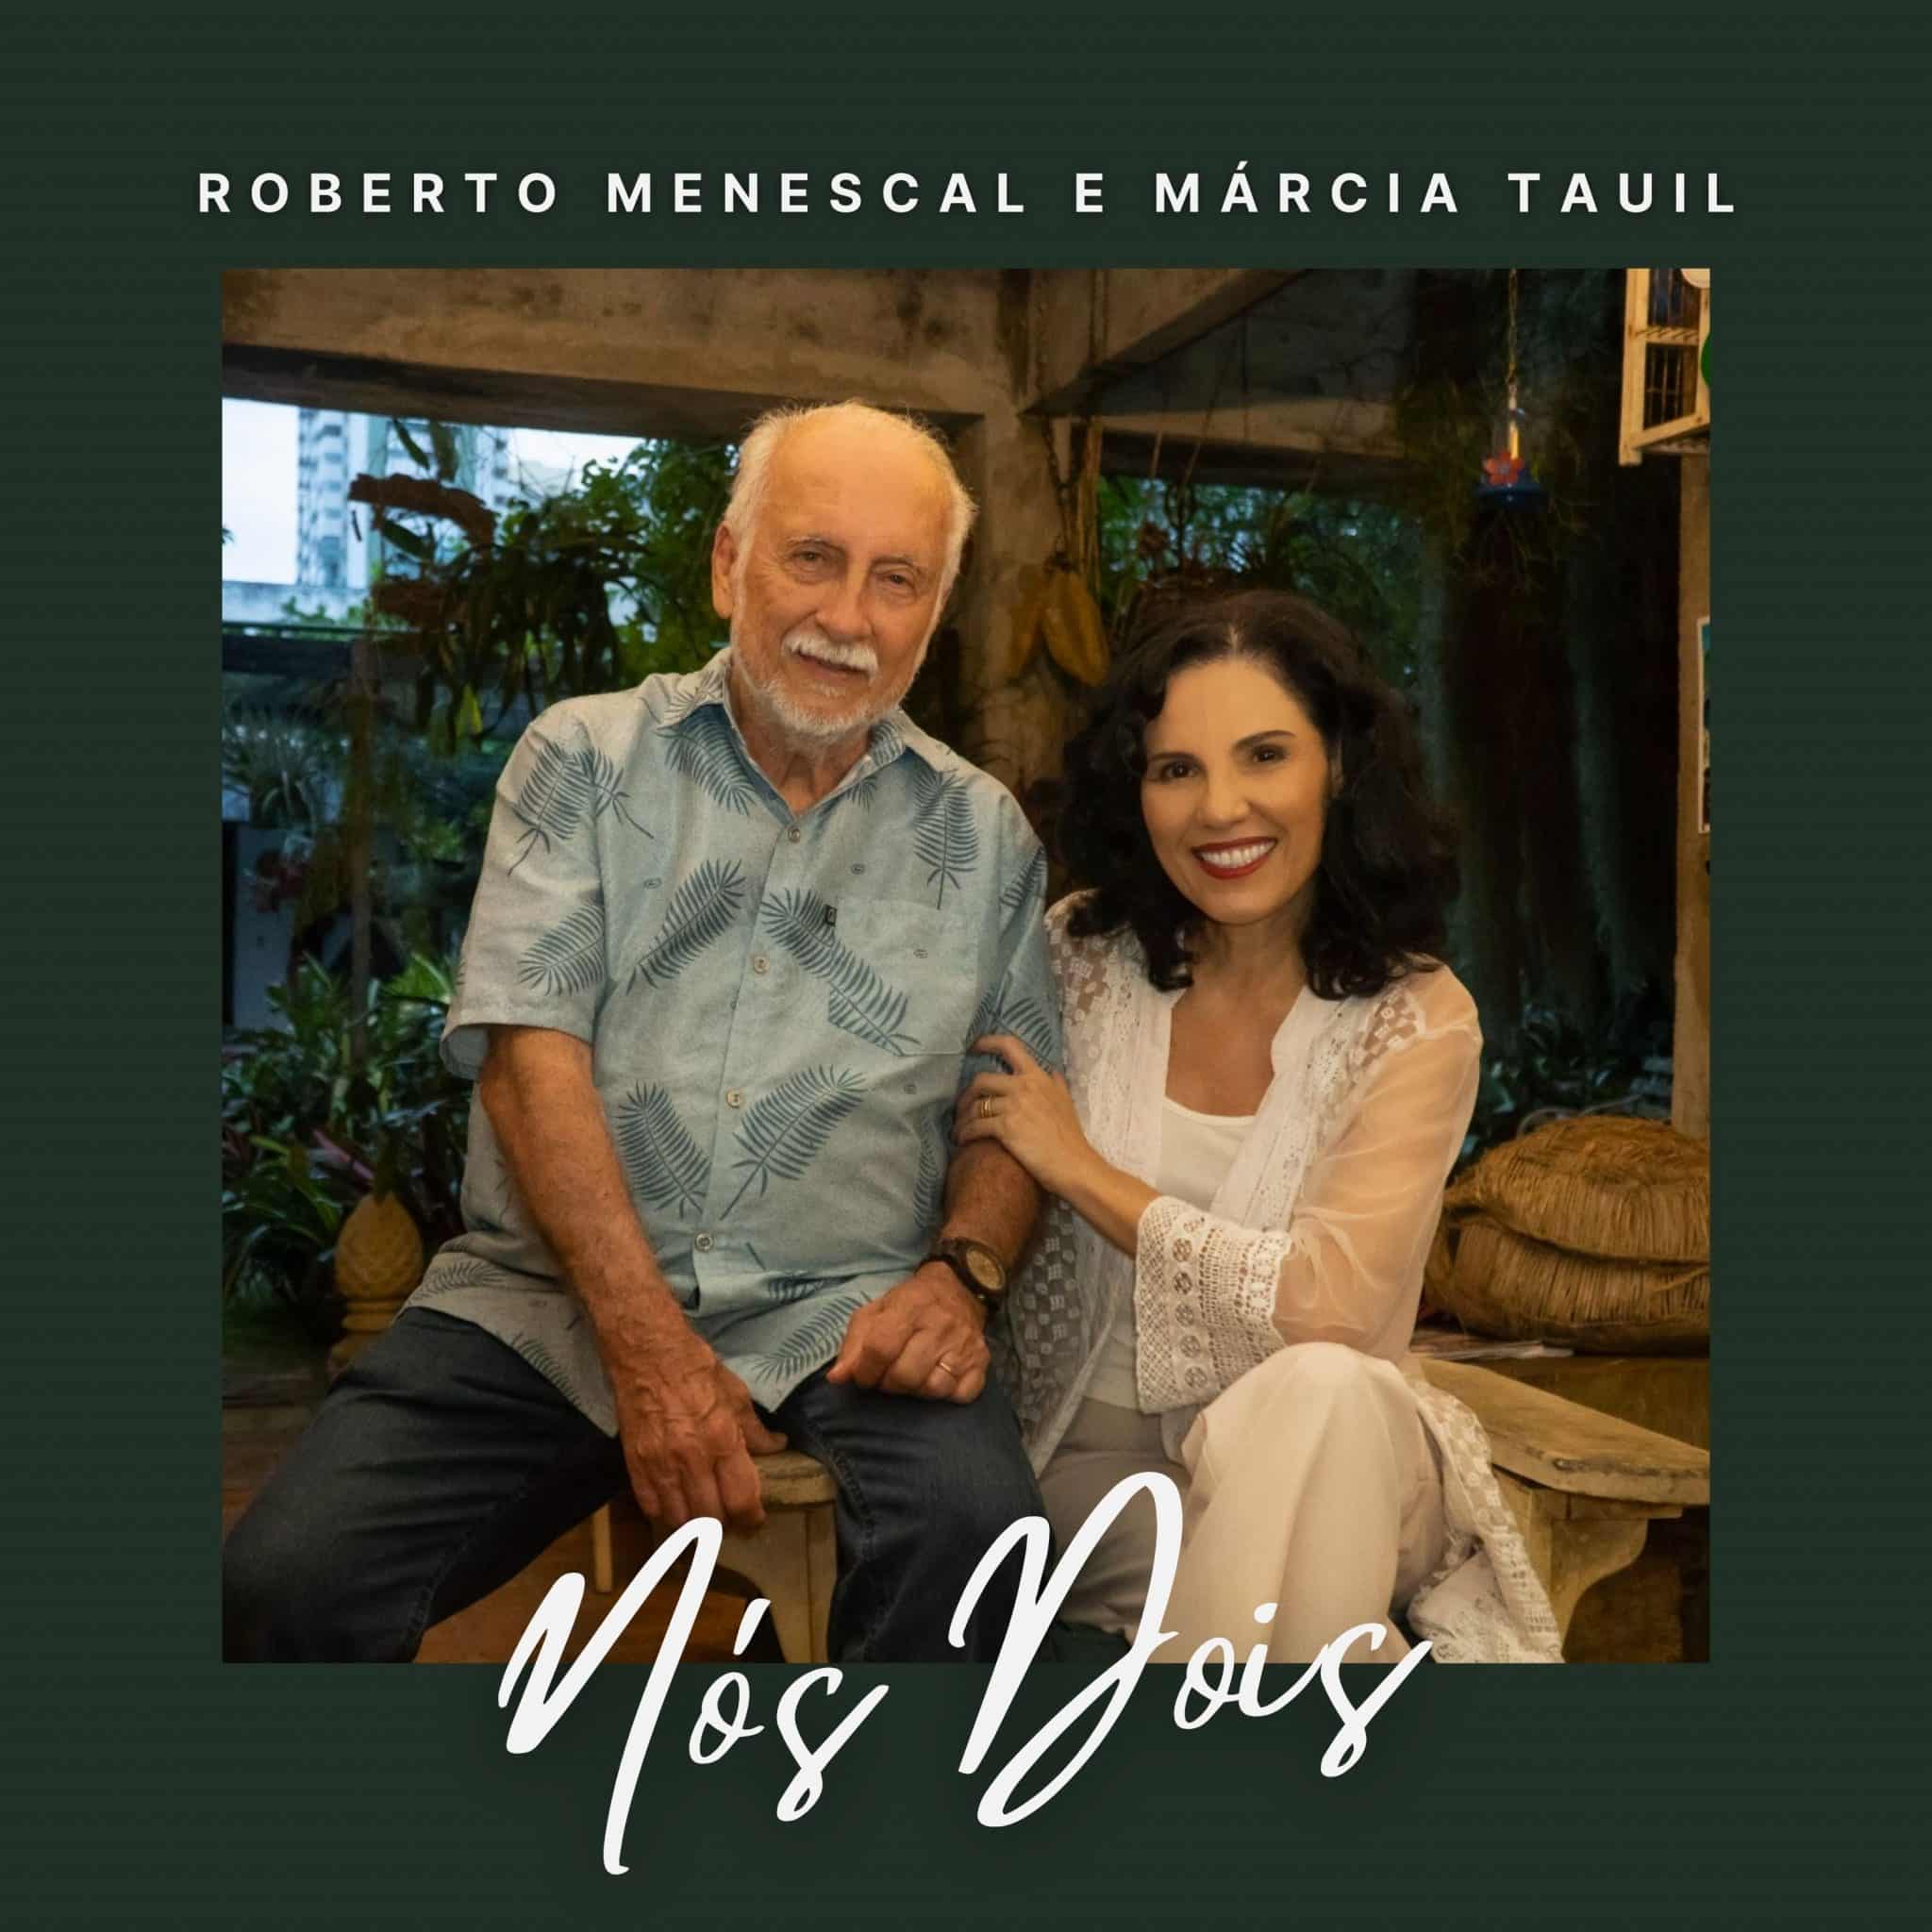 revistaprosaversoearte.com - Roberto Menescal e Márcia Tauil lançam single duplo 'Nós dois'